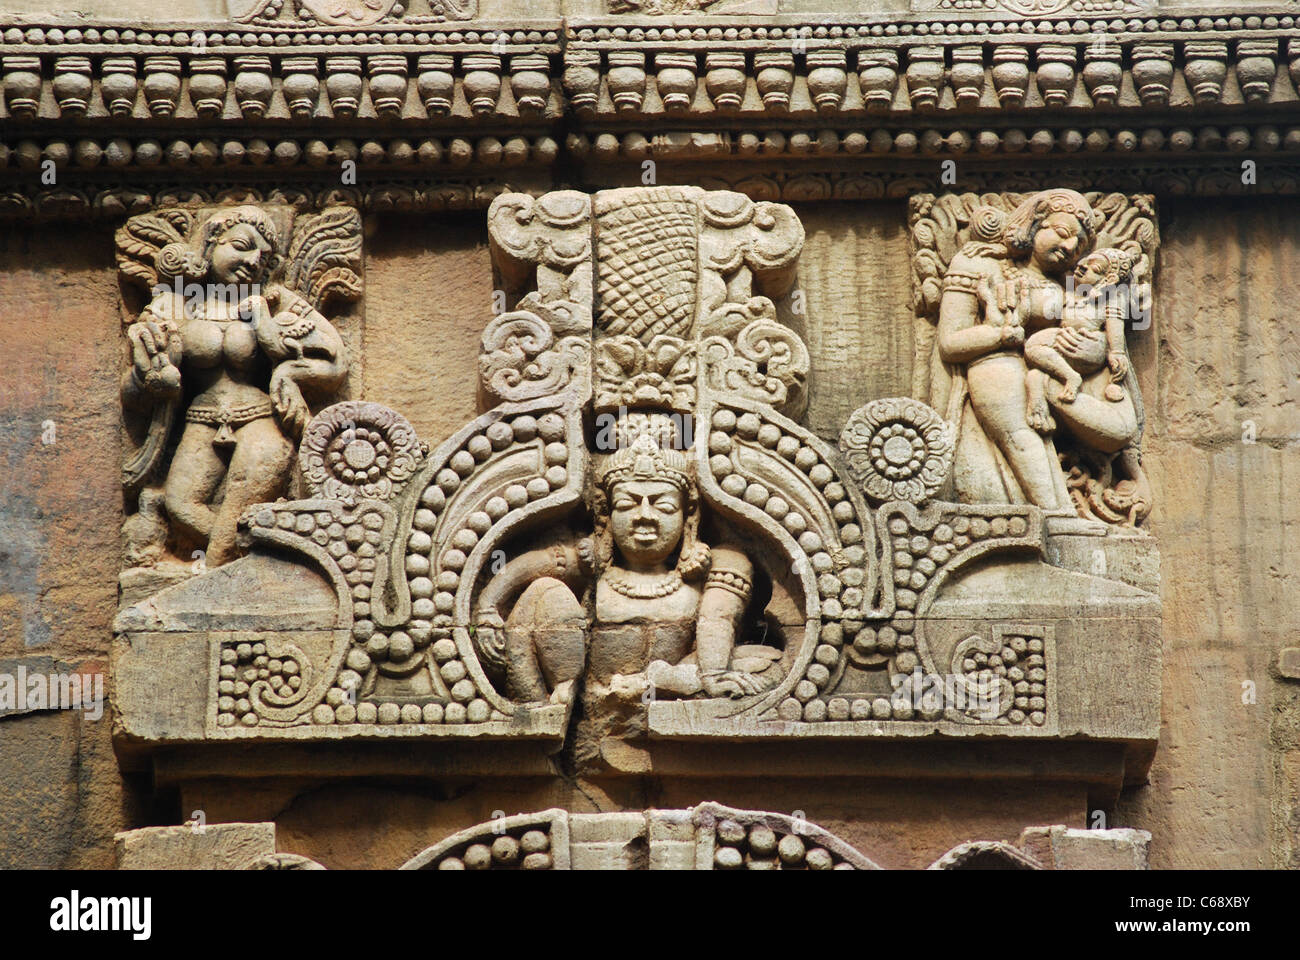 Nahaufnahme einer Skulptur auf dem 7. Jahrhundert Shiva Tempel - Parasurameswara. Es ist ein klassisches Beispiel für alte Kunst des temp Stockfoto